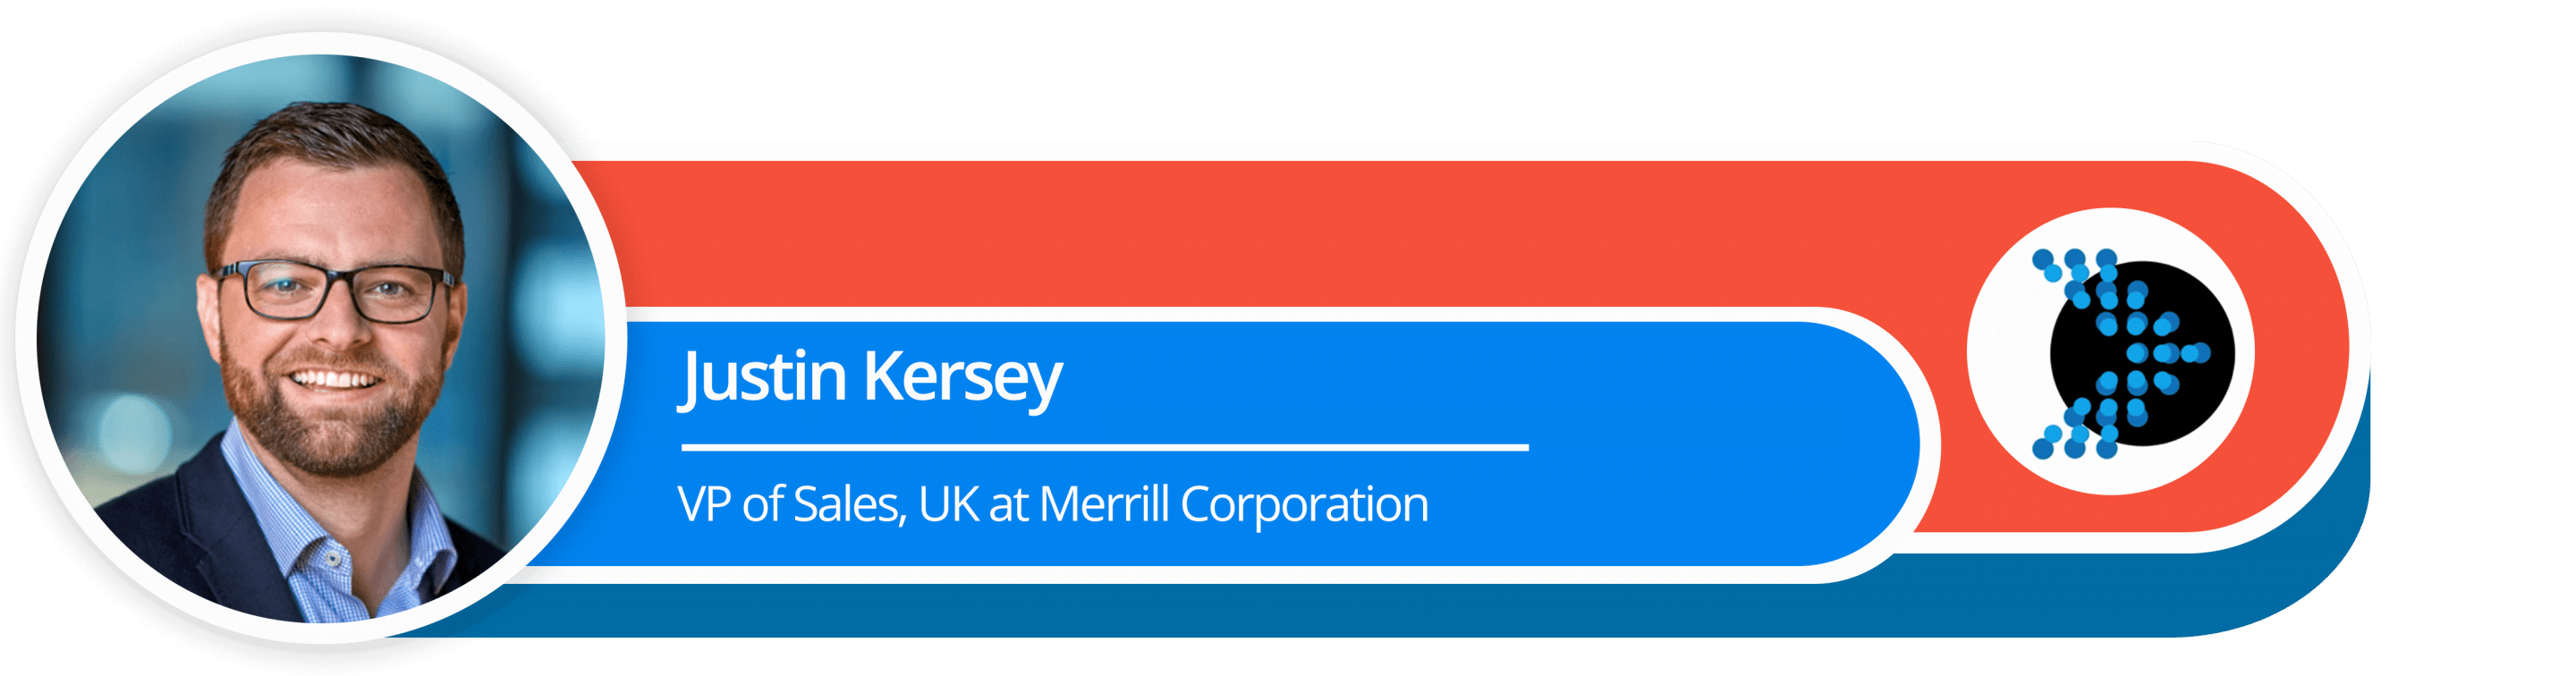 Justin Kersey
VP of Sales, UK at Merrill Corporation